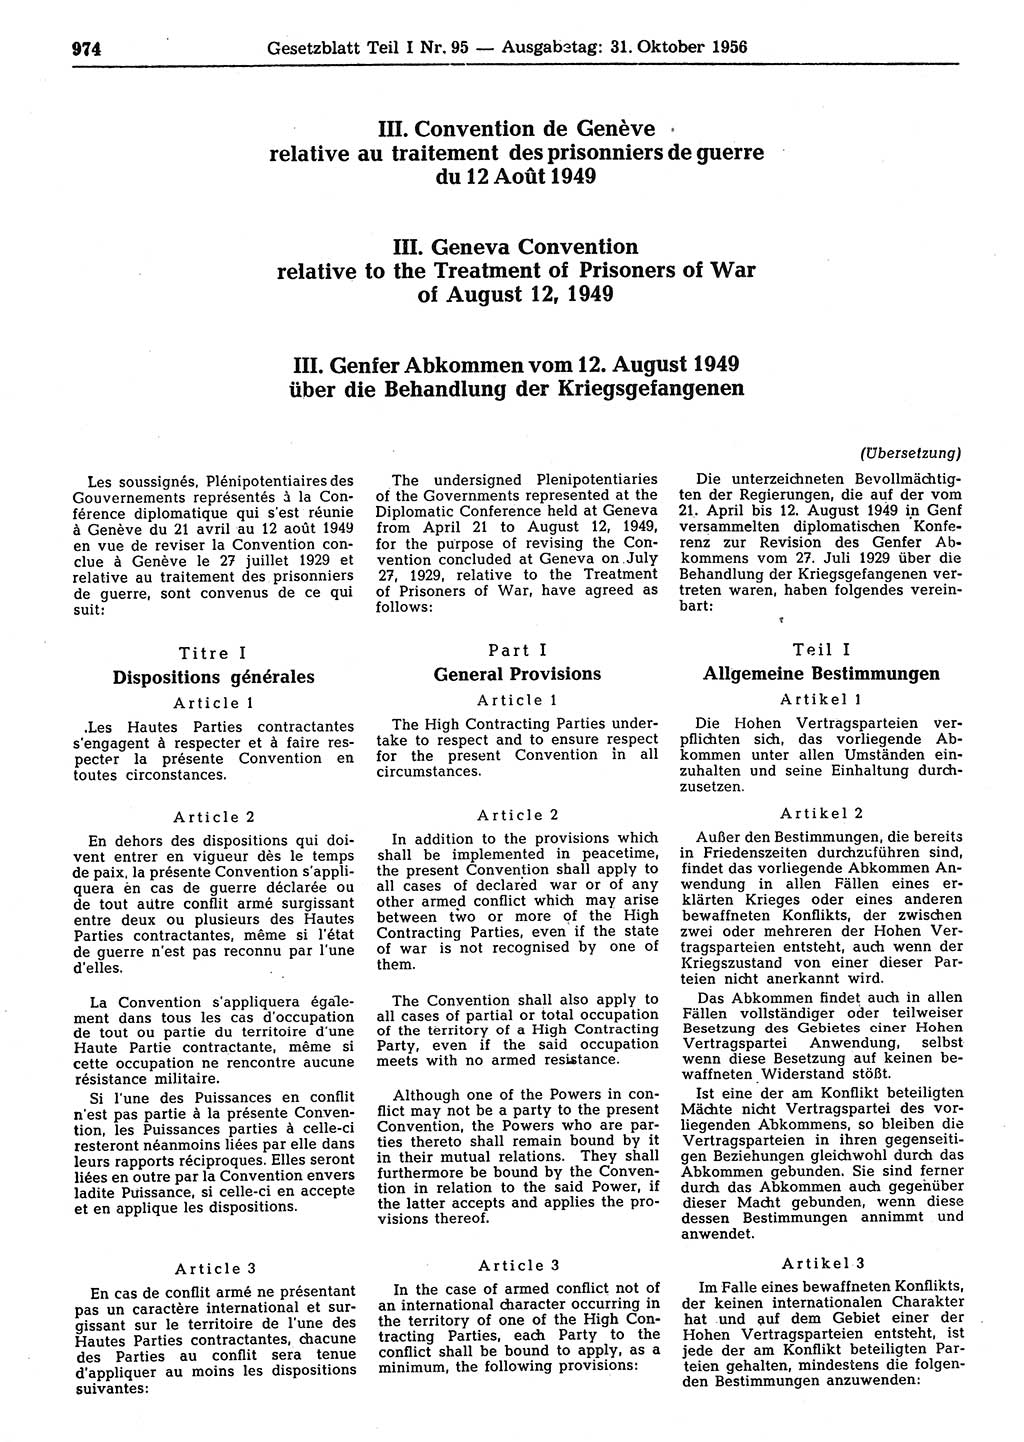 Gesetzblatt (GBl.) der Deutschen Demokratischen Republik (DDR) Teil Ⅰ 1956, Seite 974 (GBl. DDR Ⅰ 1956, S. 974)